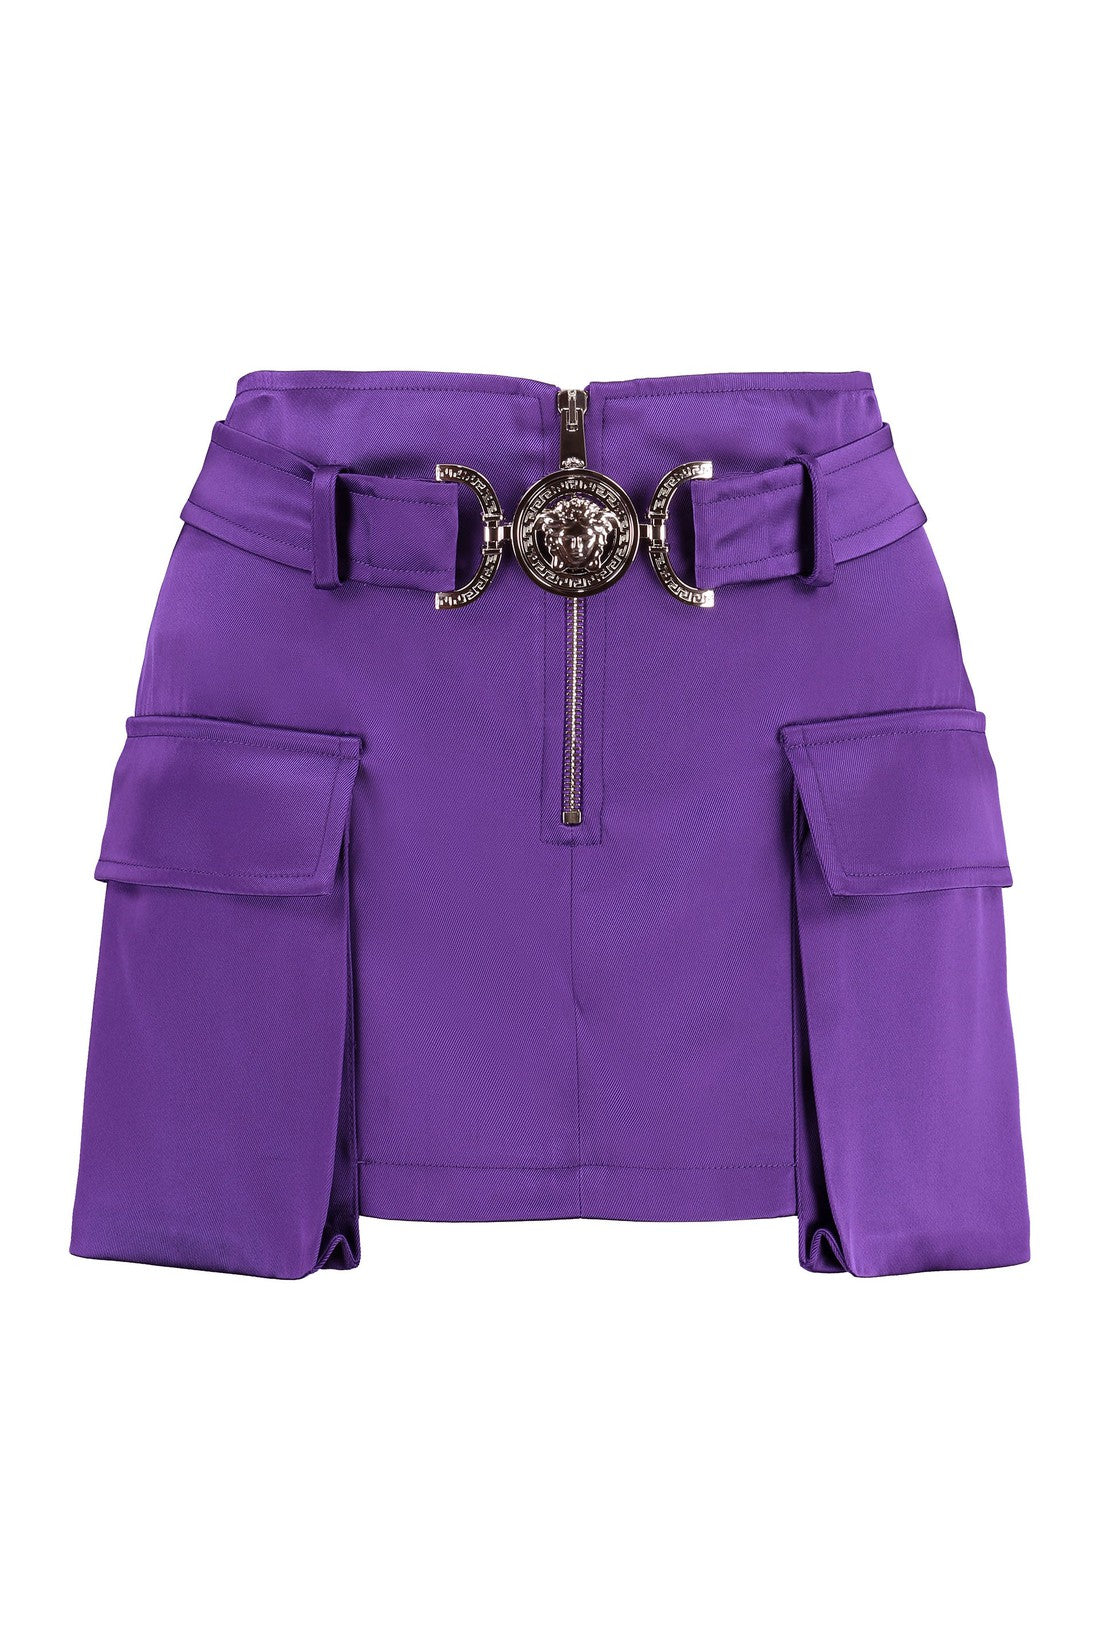 Versace-OUTLET-SALE-Cargo mini skirt-ARCHIVIST